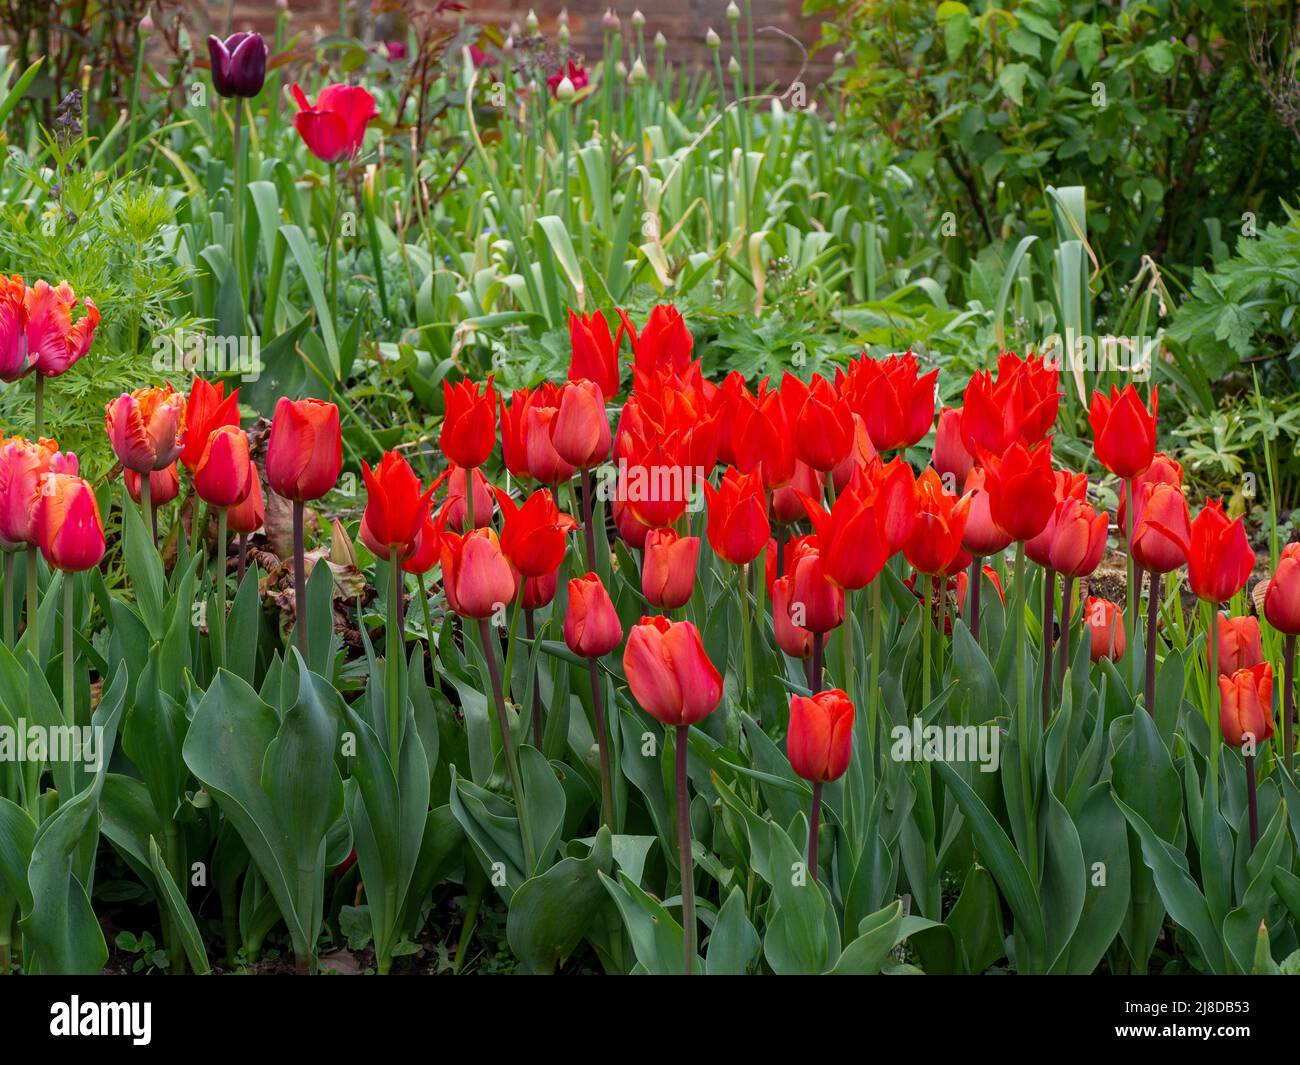 Chenies Manor Garden. Leuchtend rote und orangefarbene Tulpen mit frischem grünem Laub und Allium-Knospen. Stockfoto